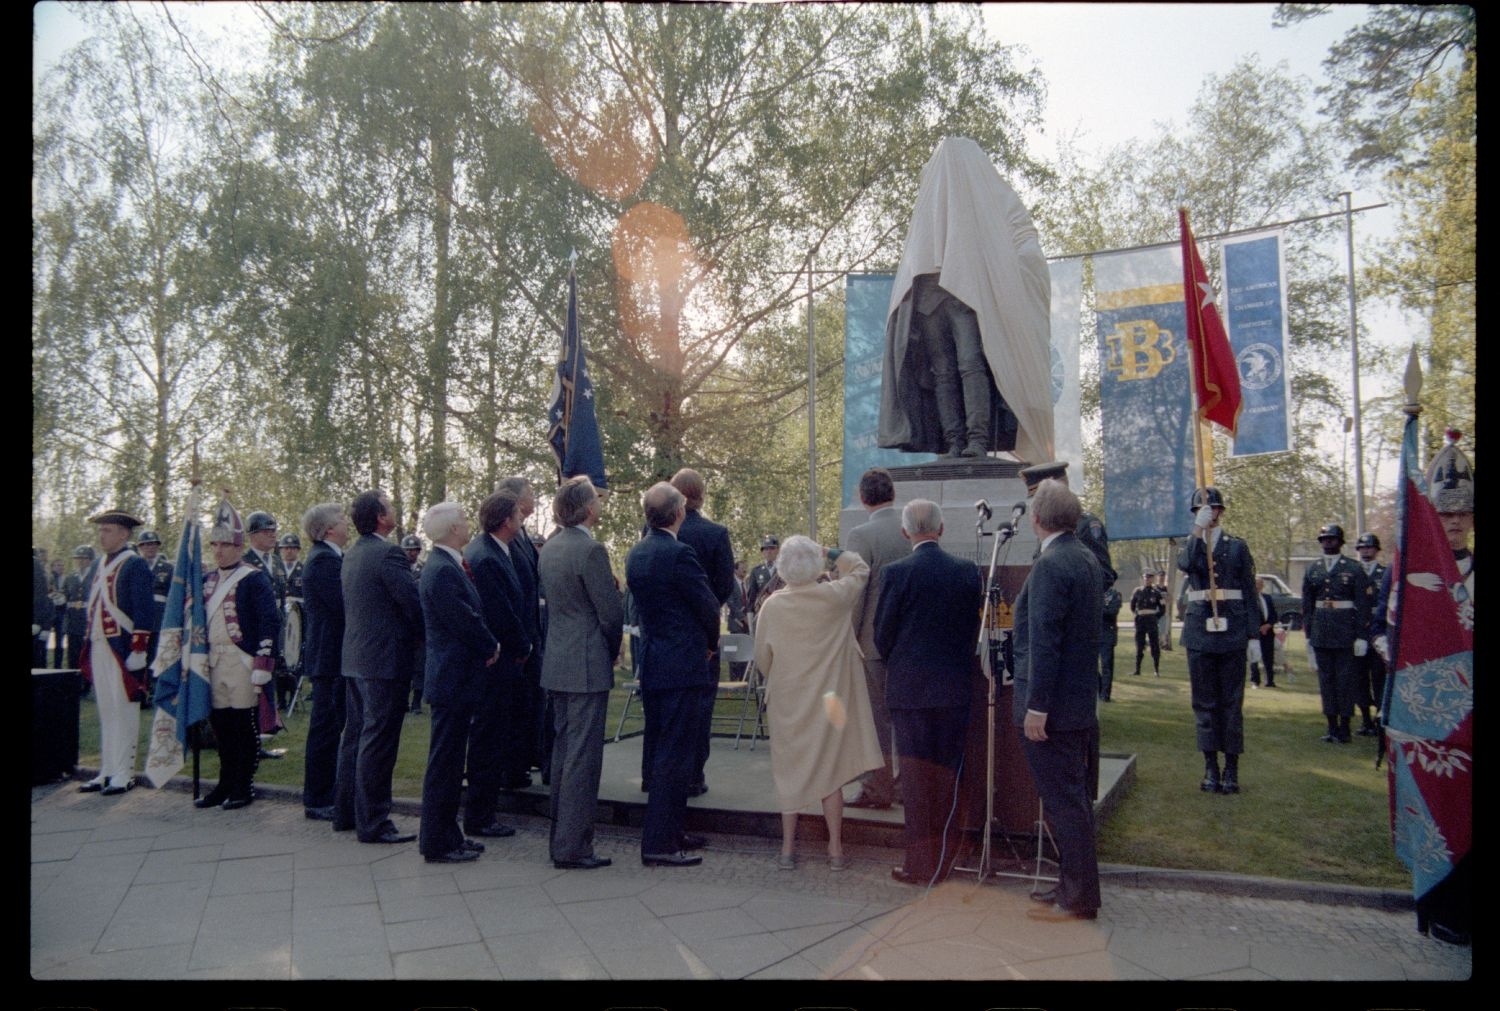 Fotografie: Enthüllung des Denkmals für General Friedrich Wilhelm Baron von Steuben an der Clayallee in Berlin-Dahlem